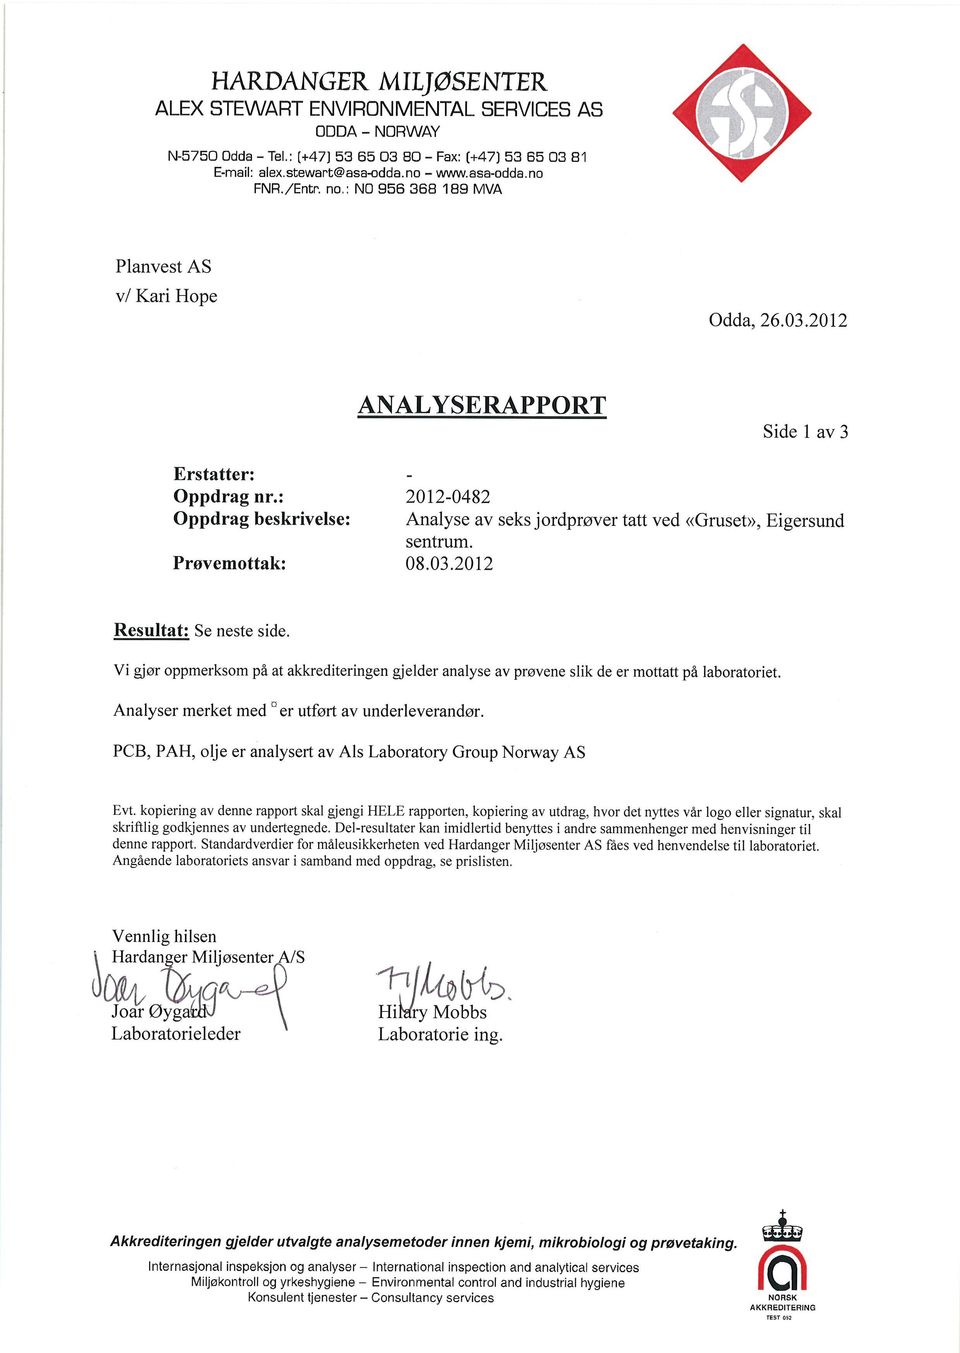 : Oppdrag beskrivelse: Prøvemottak: 2012-0482 Analyse av seks jordprøver tatt ved <Gruset>>, Eigersund sentrum. 08.03.2012 Resultat: Se neste side.